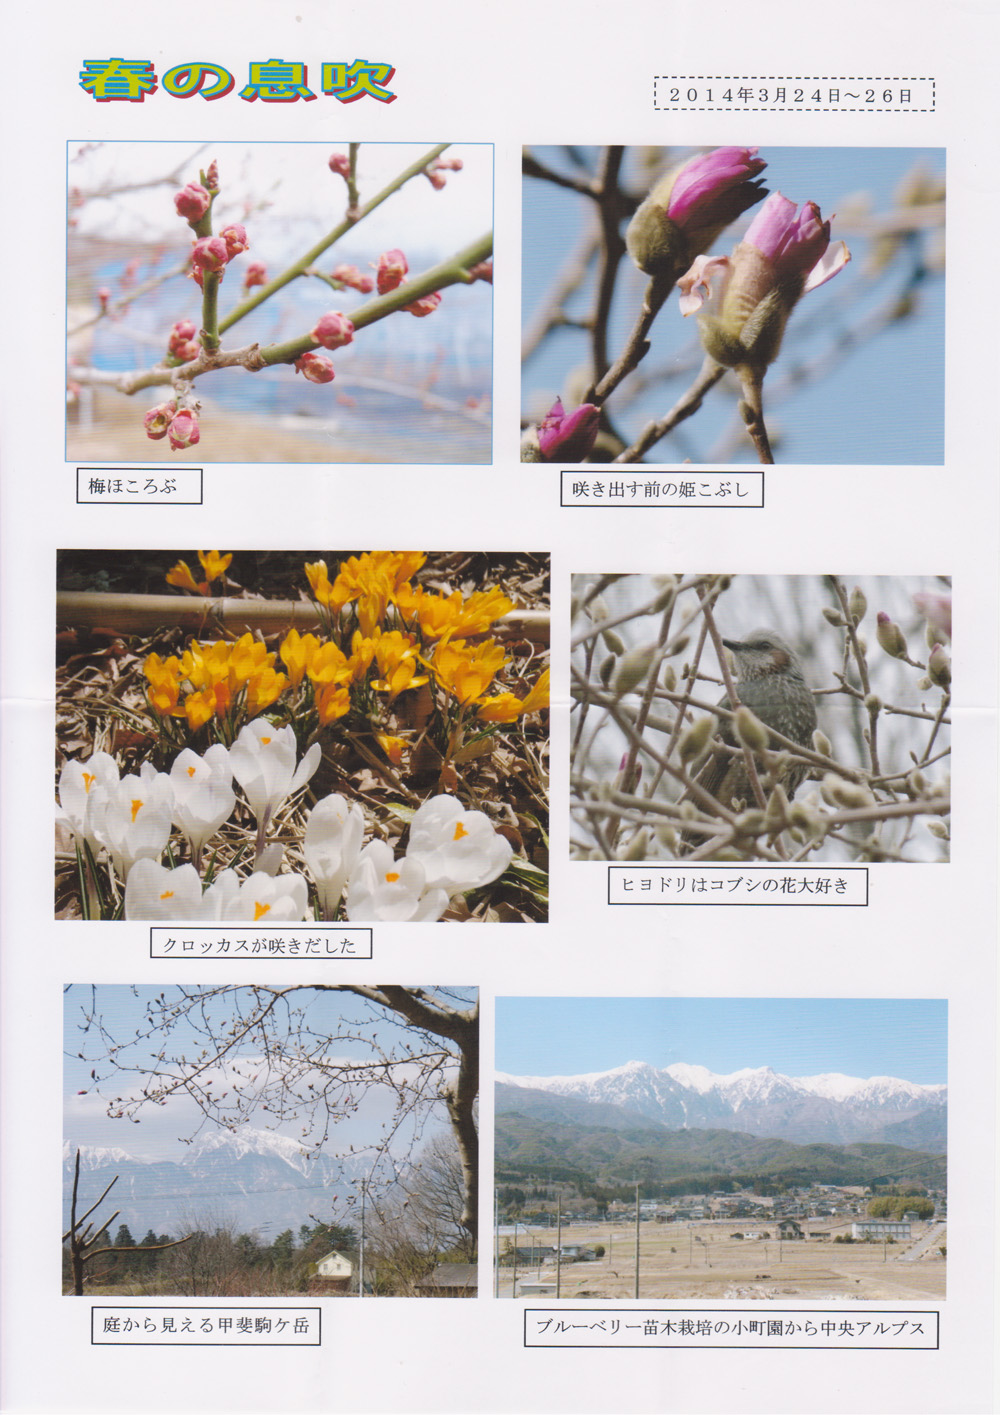 「春の息吹」画像です。 拡大してご覧ください。  野村のブログU